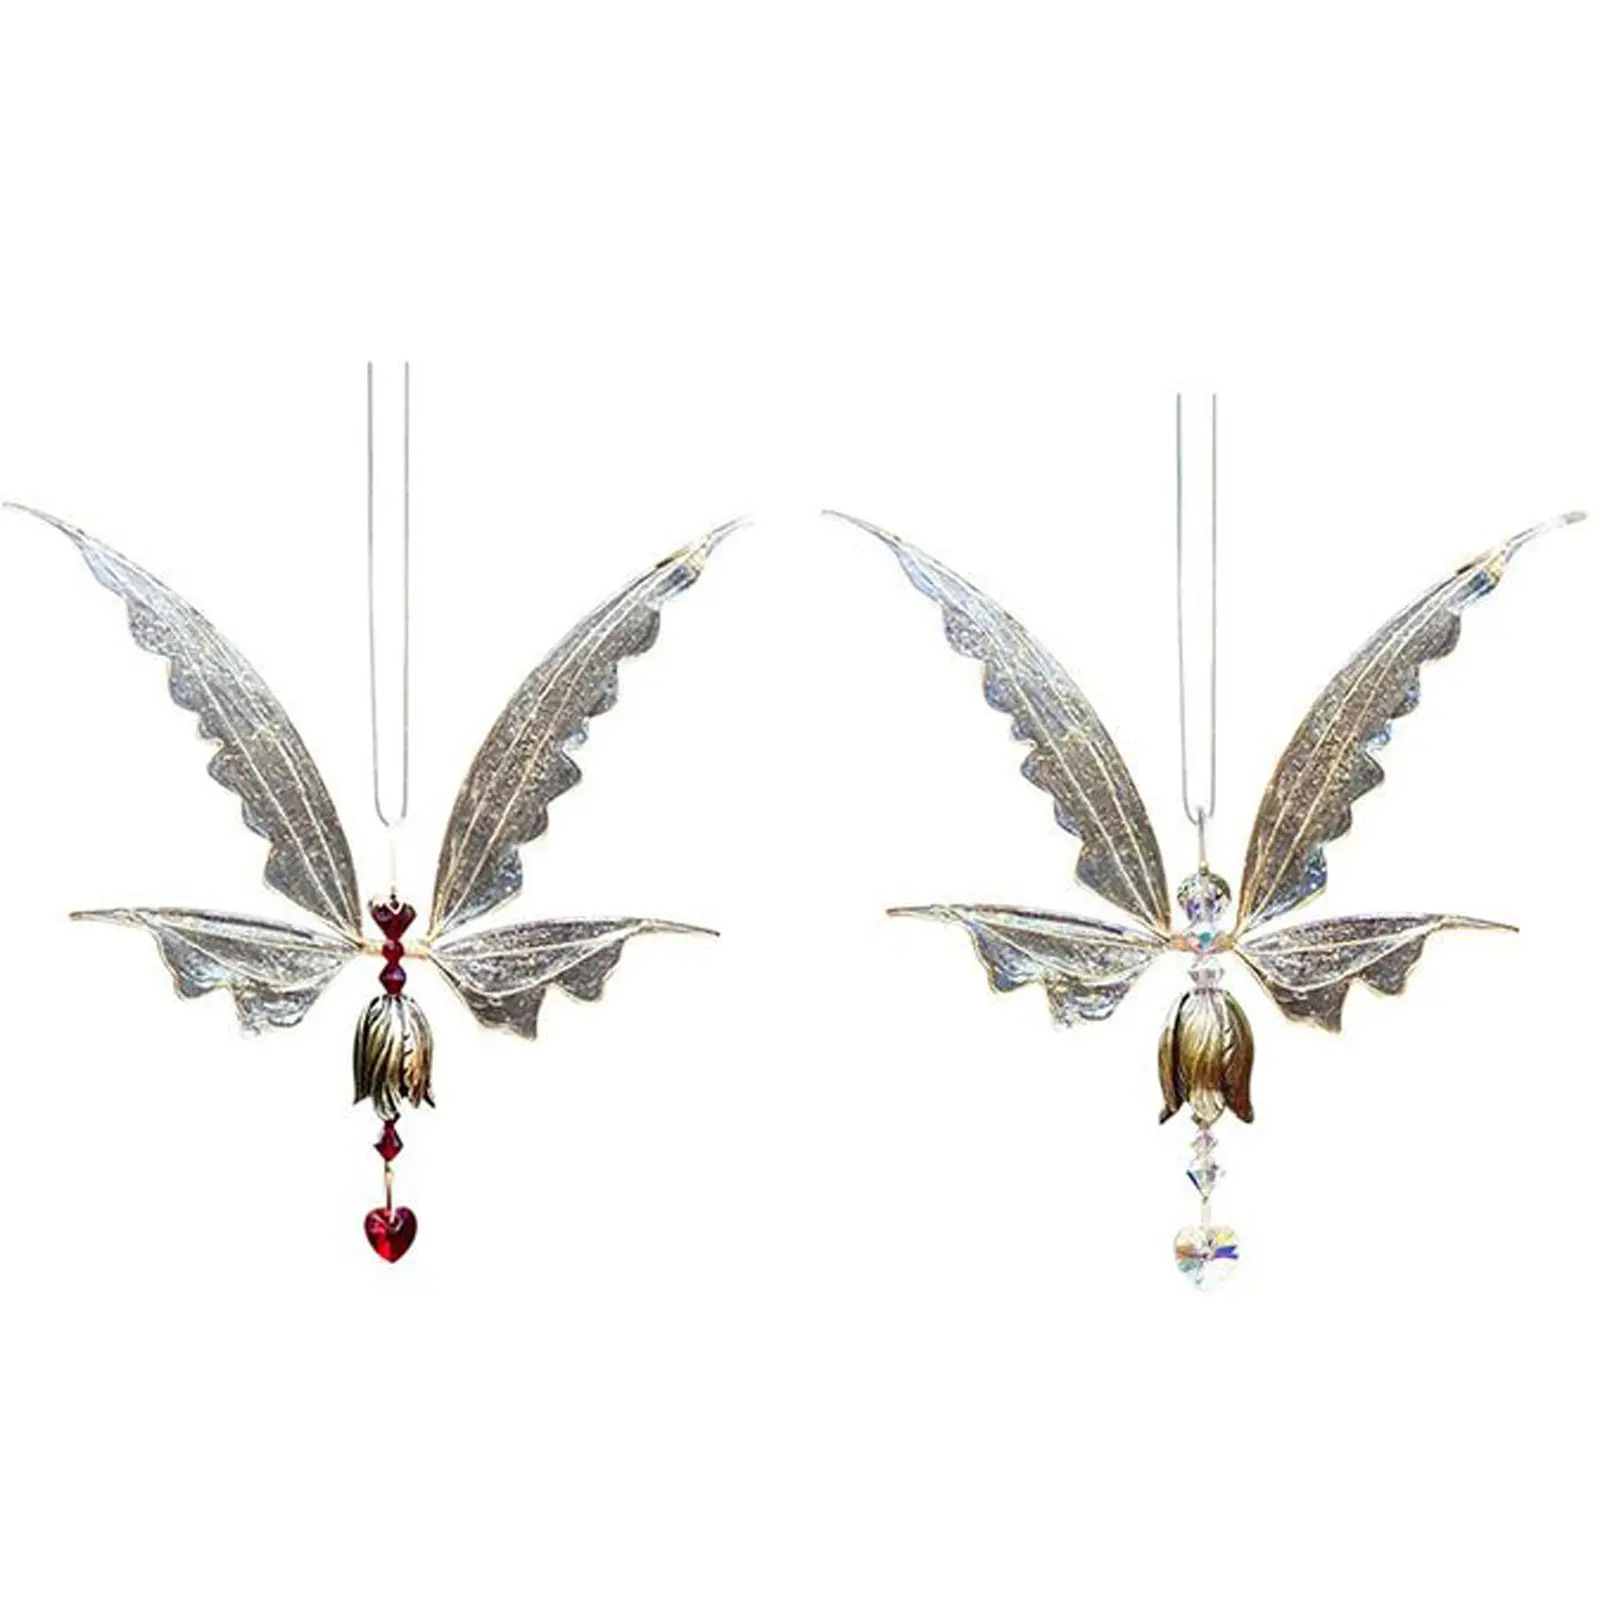 Engel Schmetterling Flügel Windspiele für draußen hängende Kristall Windspiel Anhänger Memorial Windspiele Dekor für Patio Garten